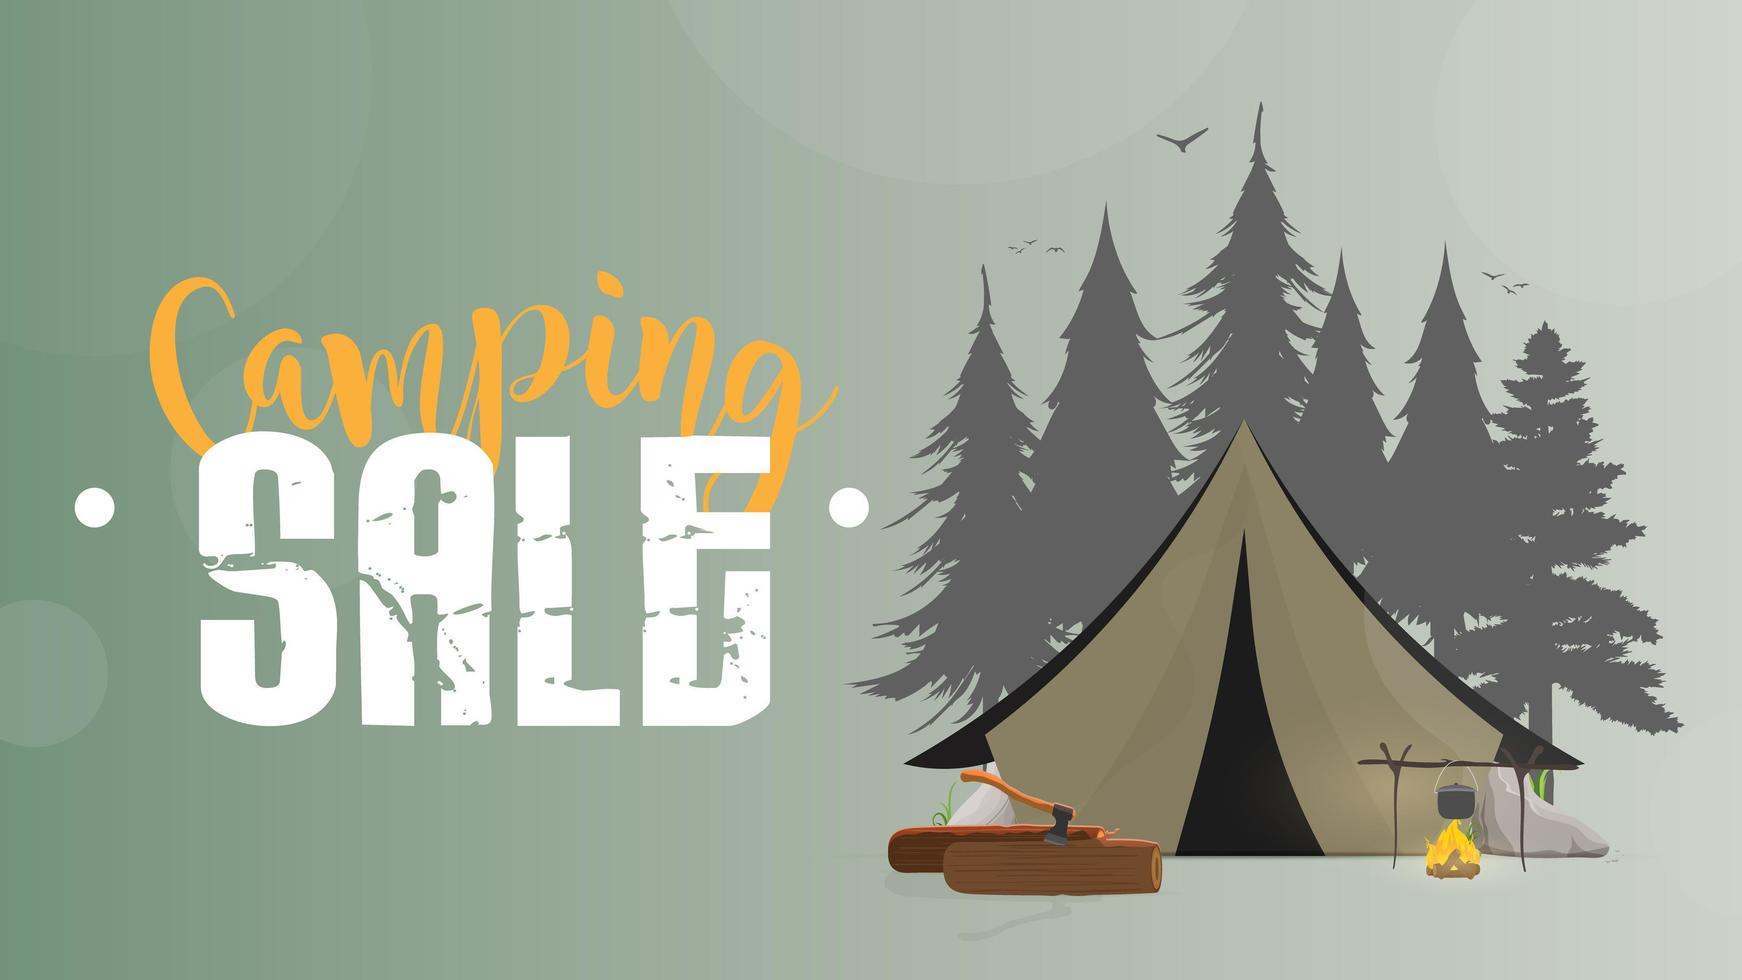 vendita campeggio. bandiera verde. tenda, foreste di silhouette, falò, tronchi, ascia, tenda, fiume, alberi. illustrazione vettoriale